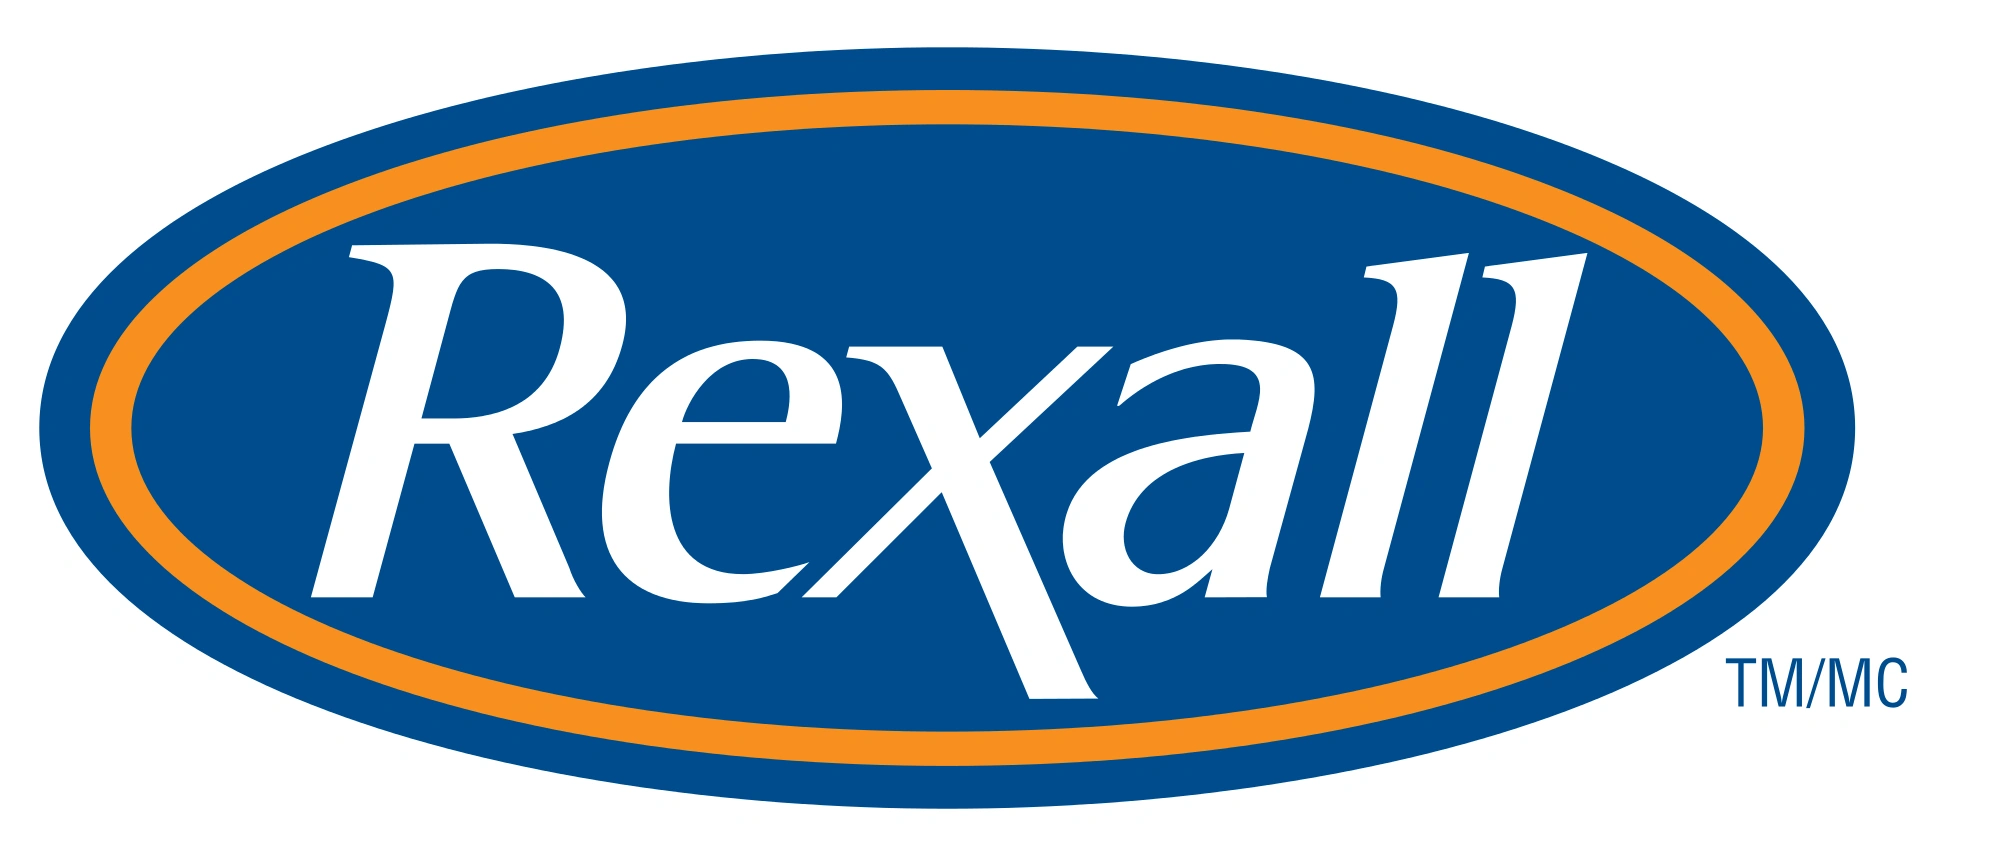 Rexall (Canada) Logo 2006